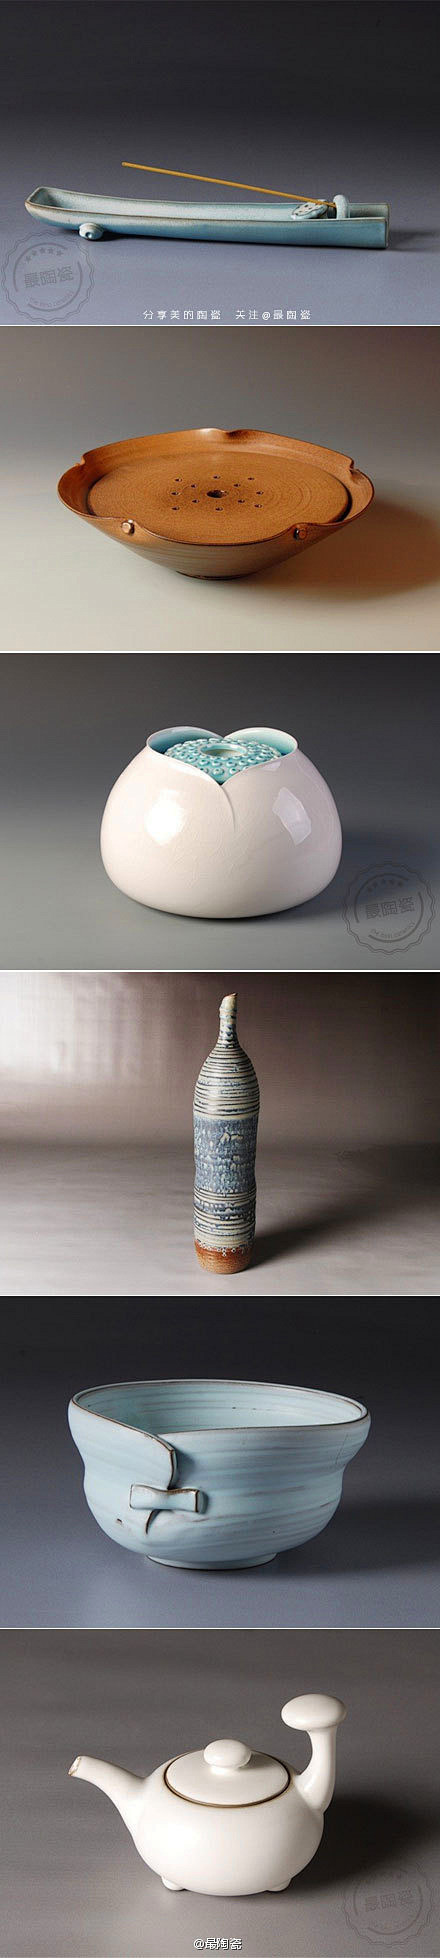 【图】万仟堂陶瓷: 成功的设计是一种寻找...